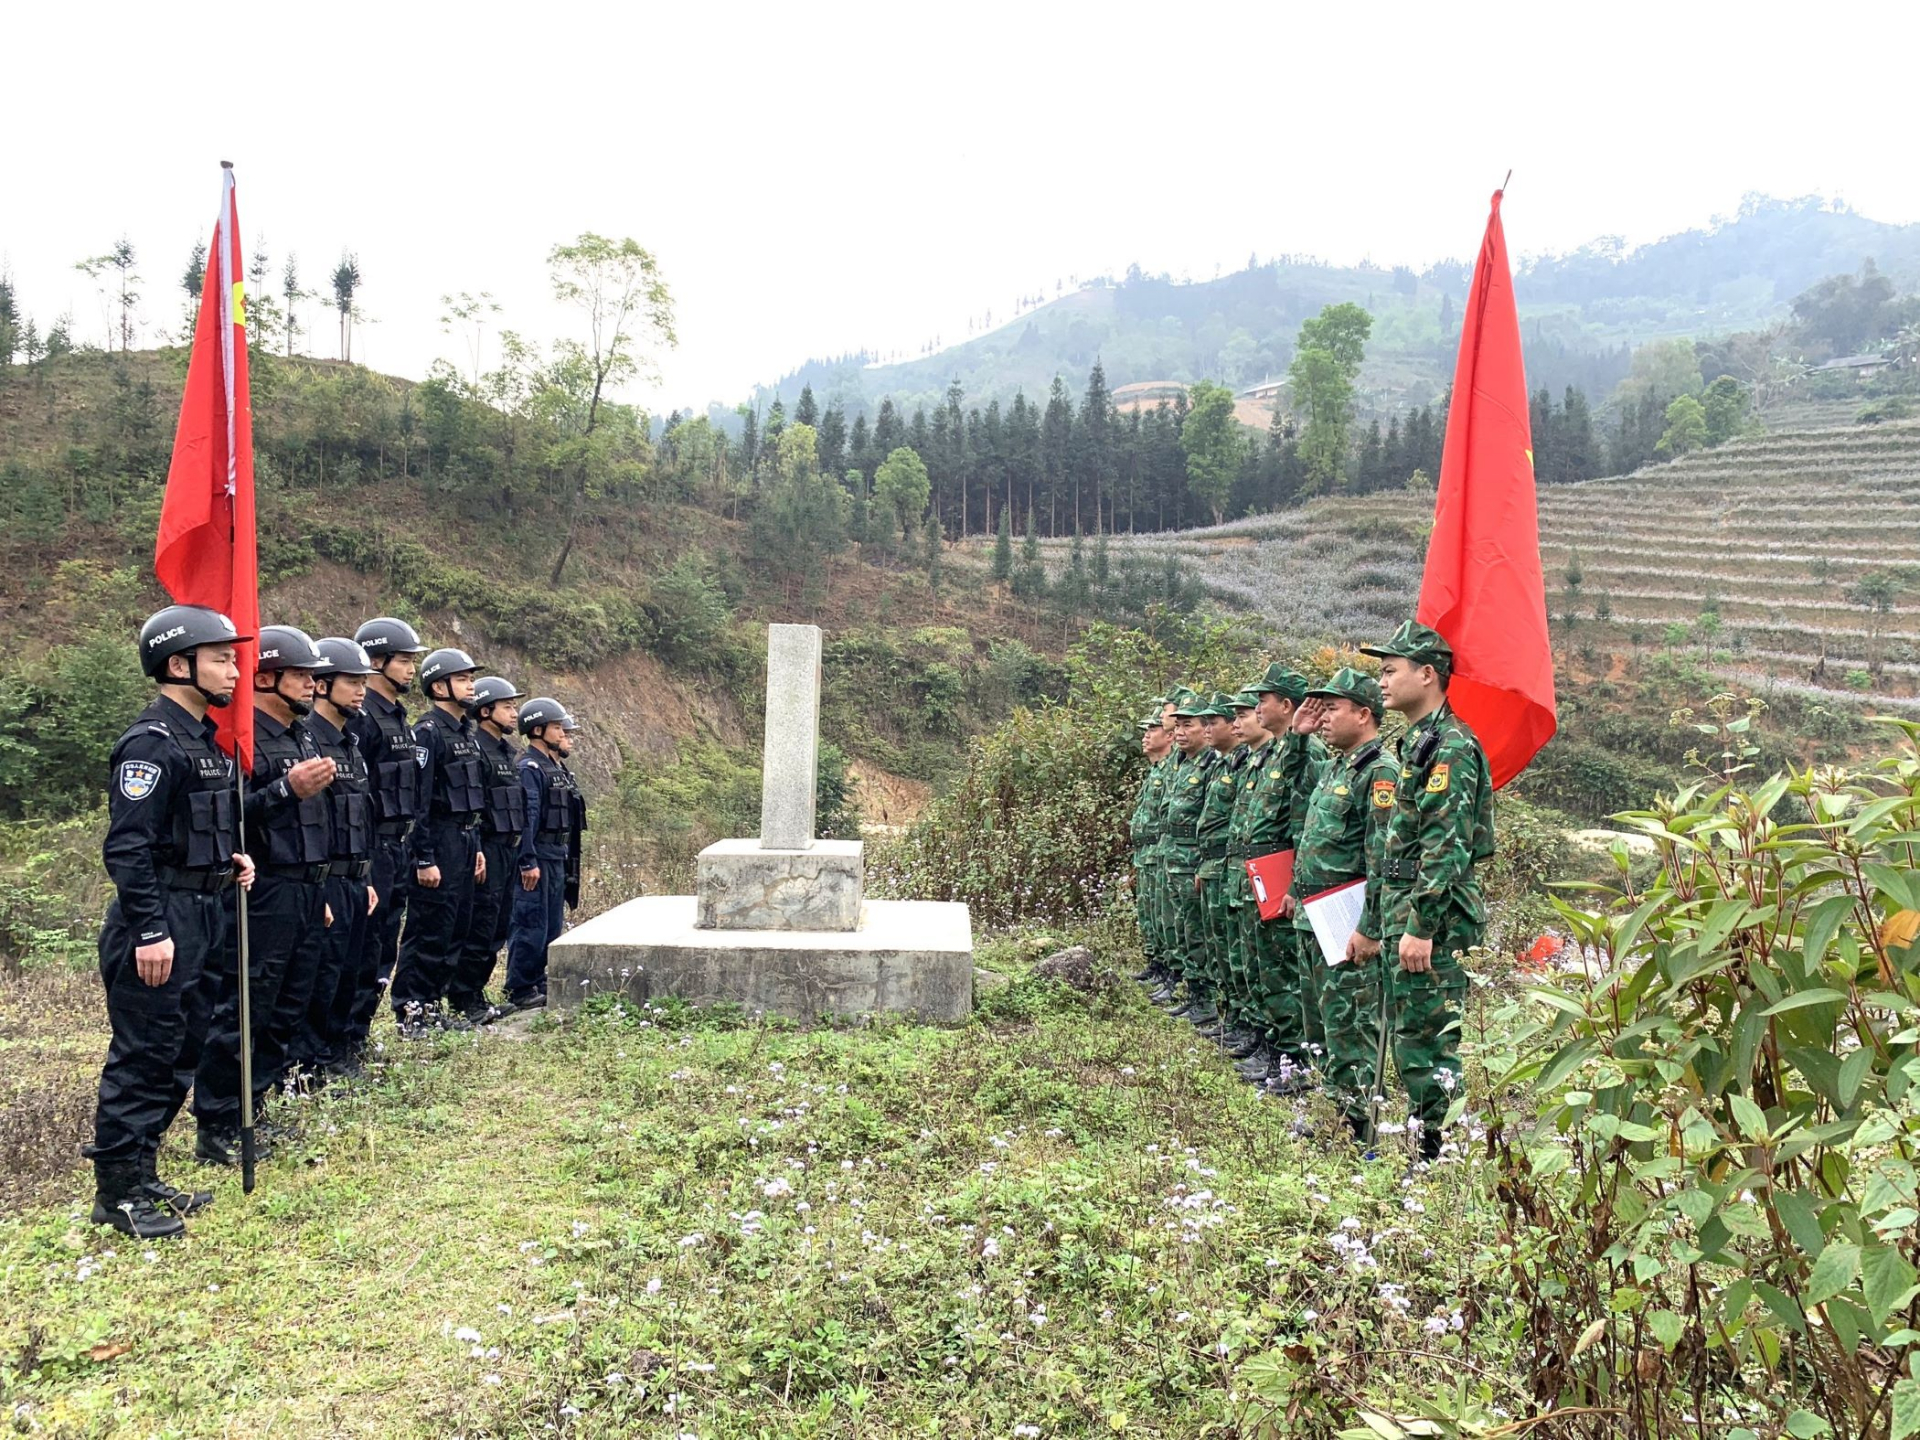 Đội tuần tra Đồn Biên phòng Bản Máy (Hoàng Su Phì) và Đội tuần tra Đồn Công an Biên cảnh Mã Quan (Trung Quốc) thực hiện các nghi thức kiểm tra cột mốc 215.